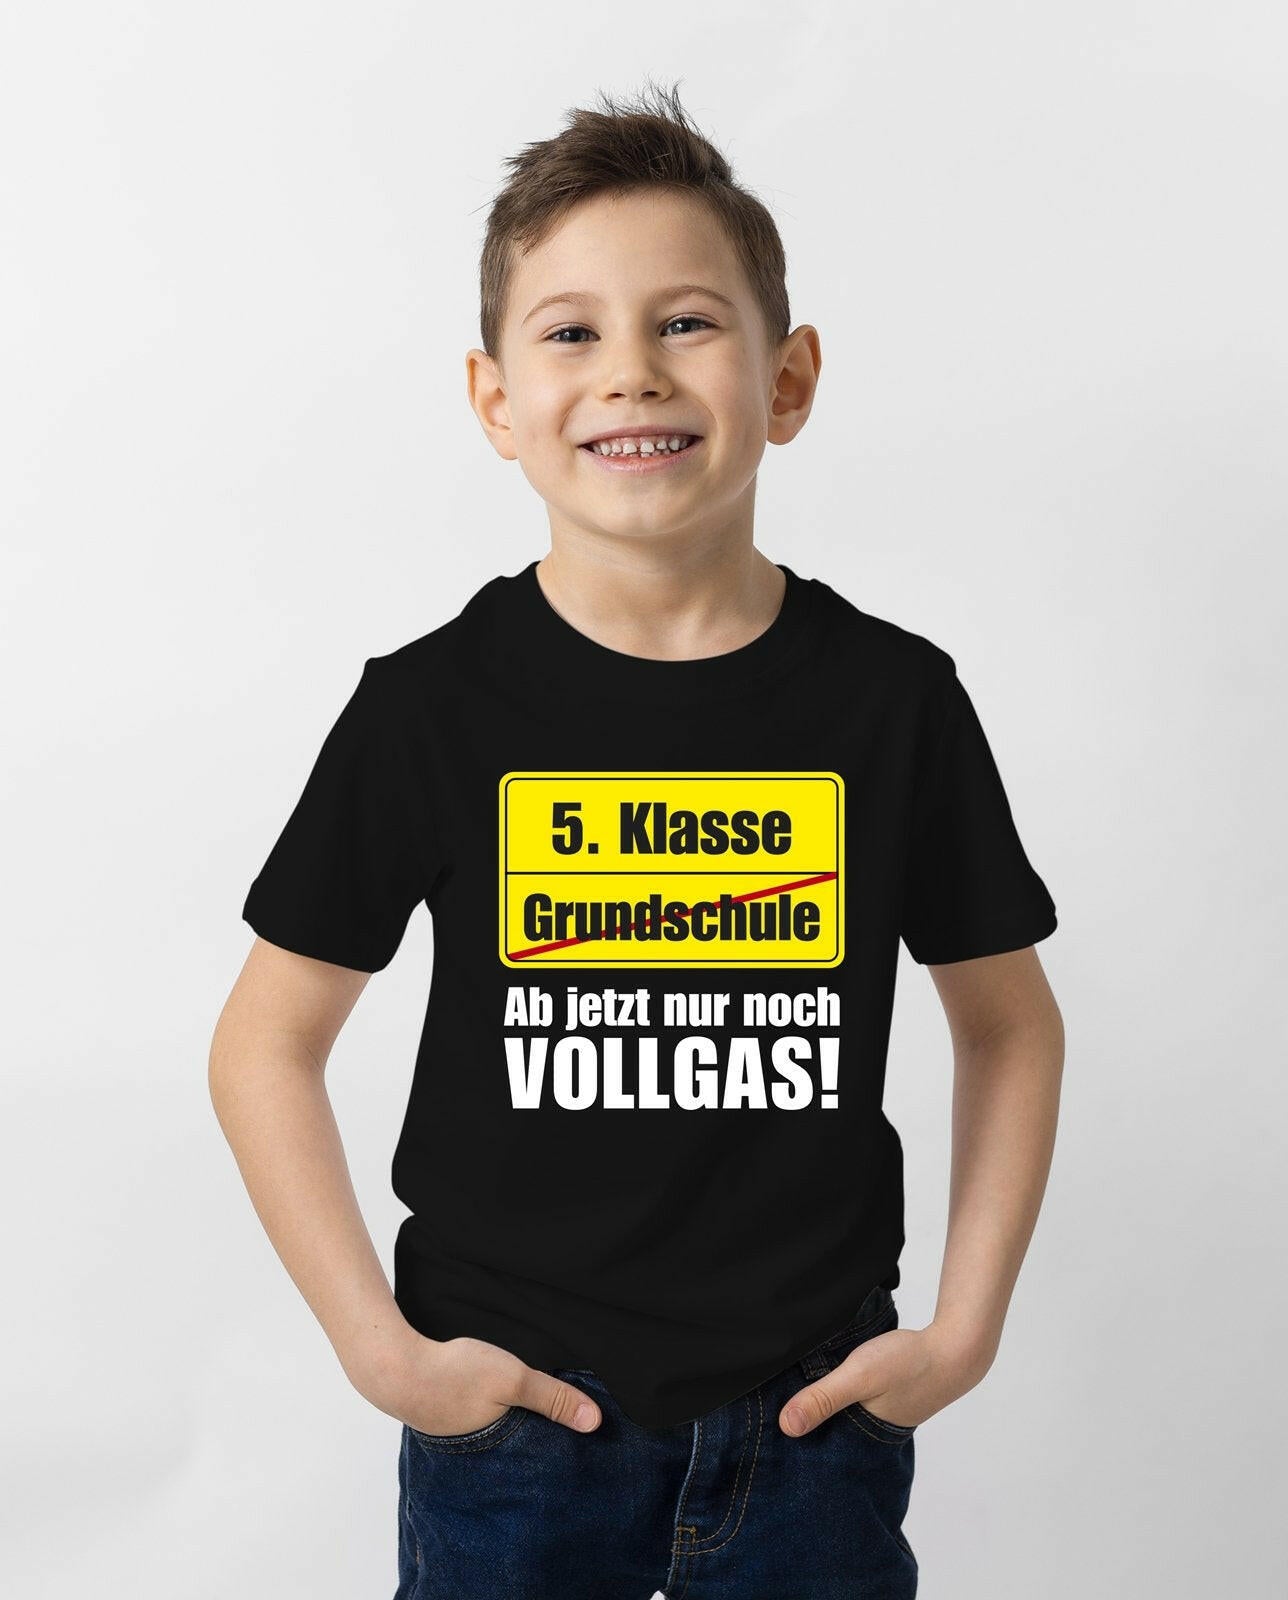 Bild: T-Shirt Kinder - 5. Klasse Ab jetzt nur noch Vollgas! (Abschied Grundschule) Geschenkidee